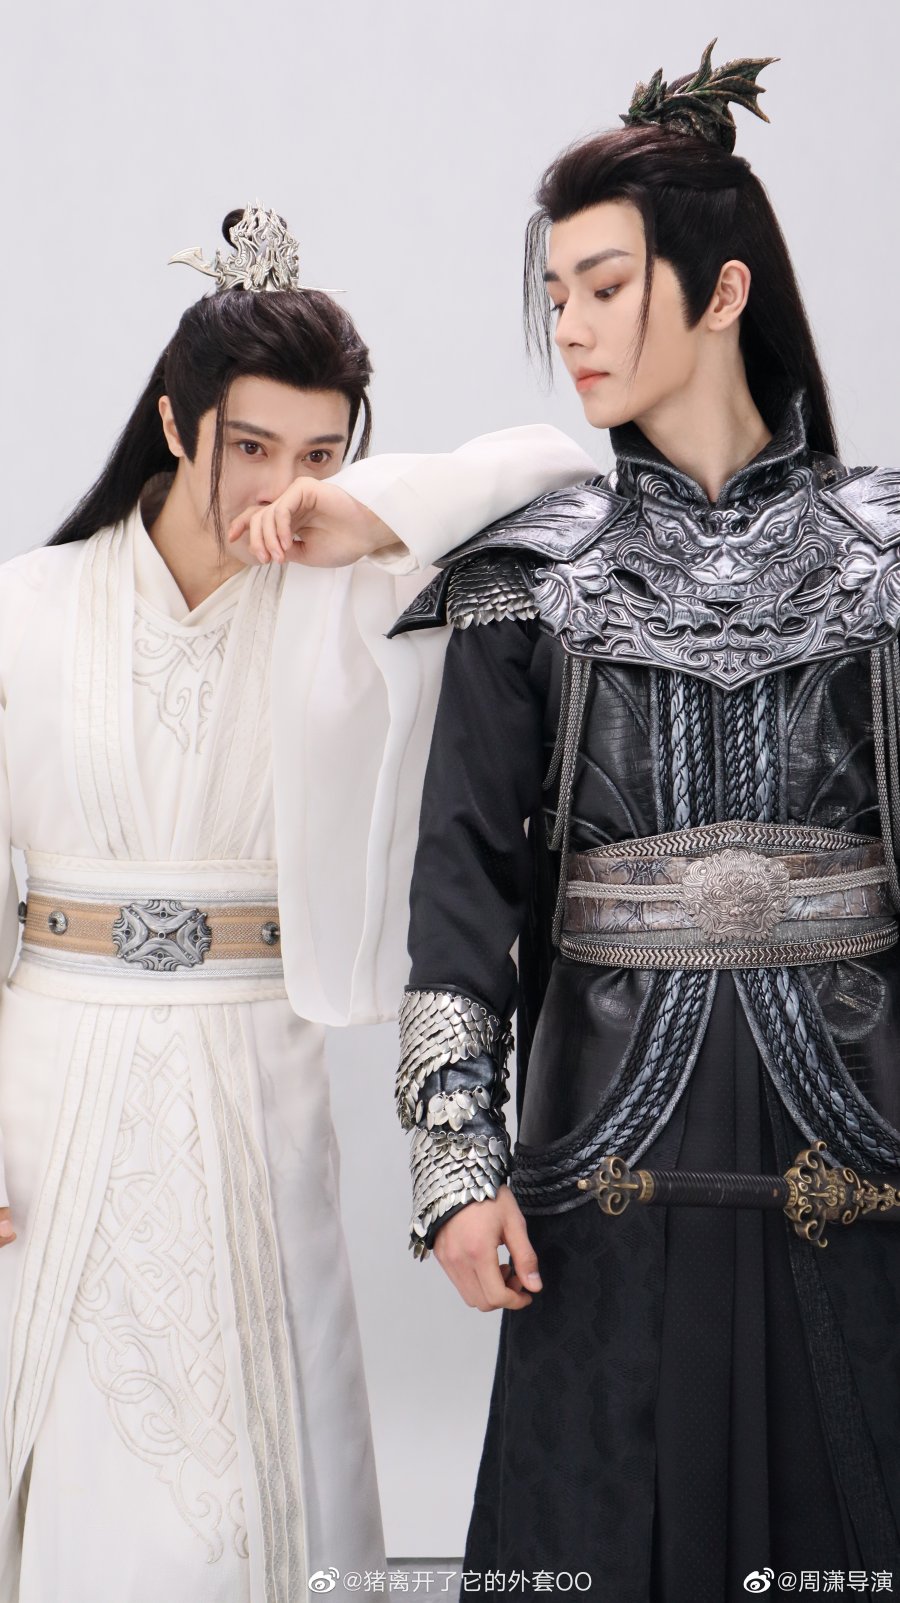 Is Xian Zun Whitewashed Today? - Season 2 Costume Photoshoot #2958077 ...